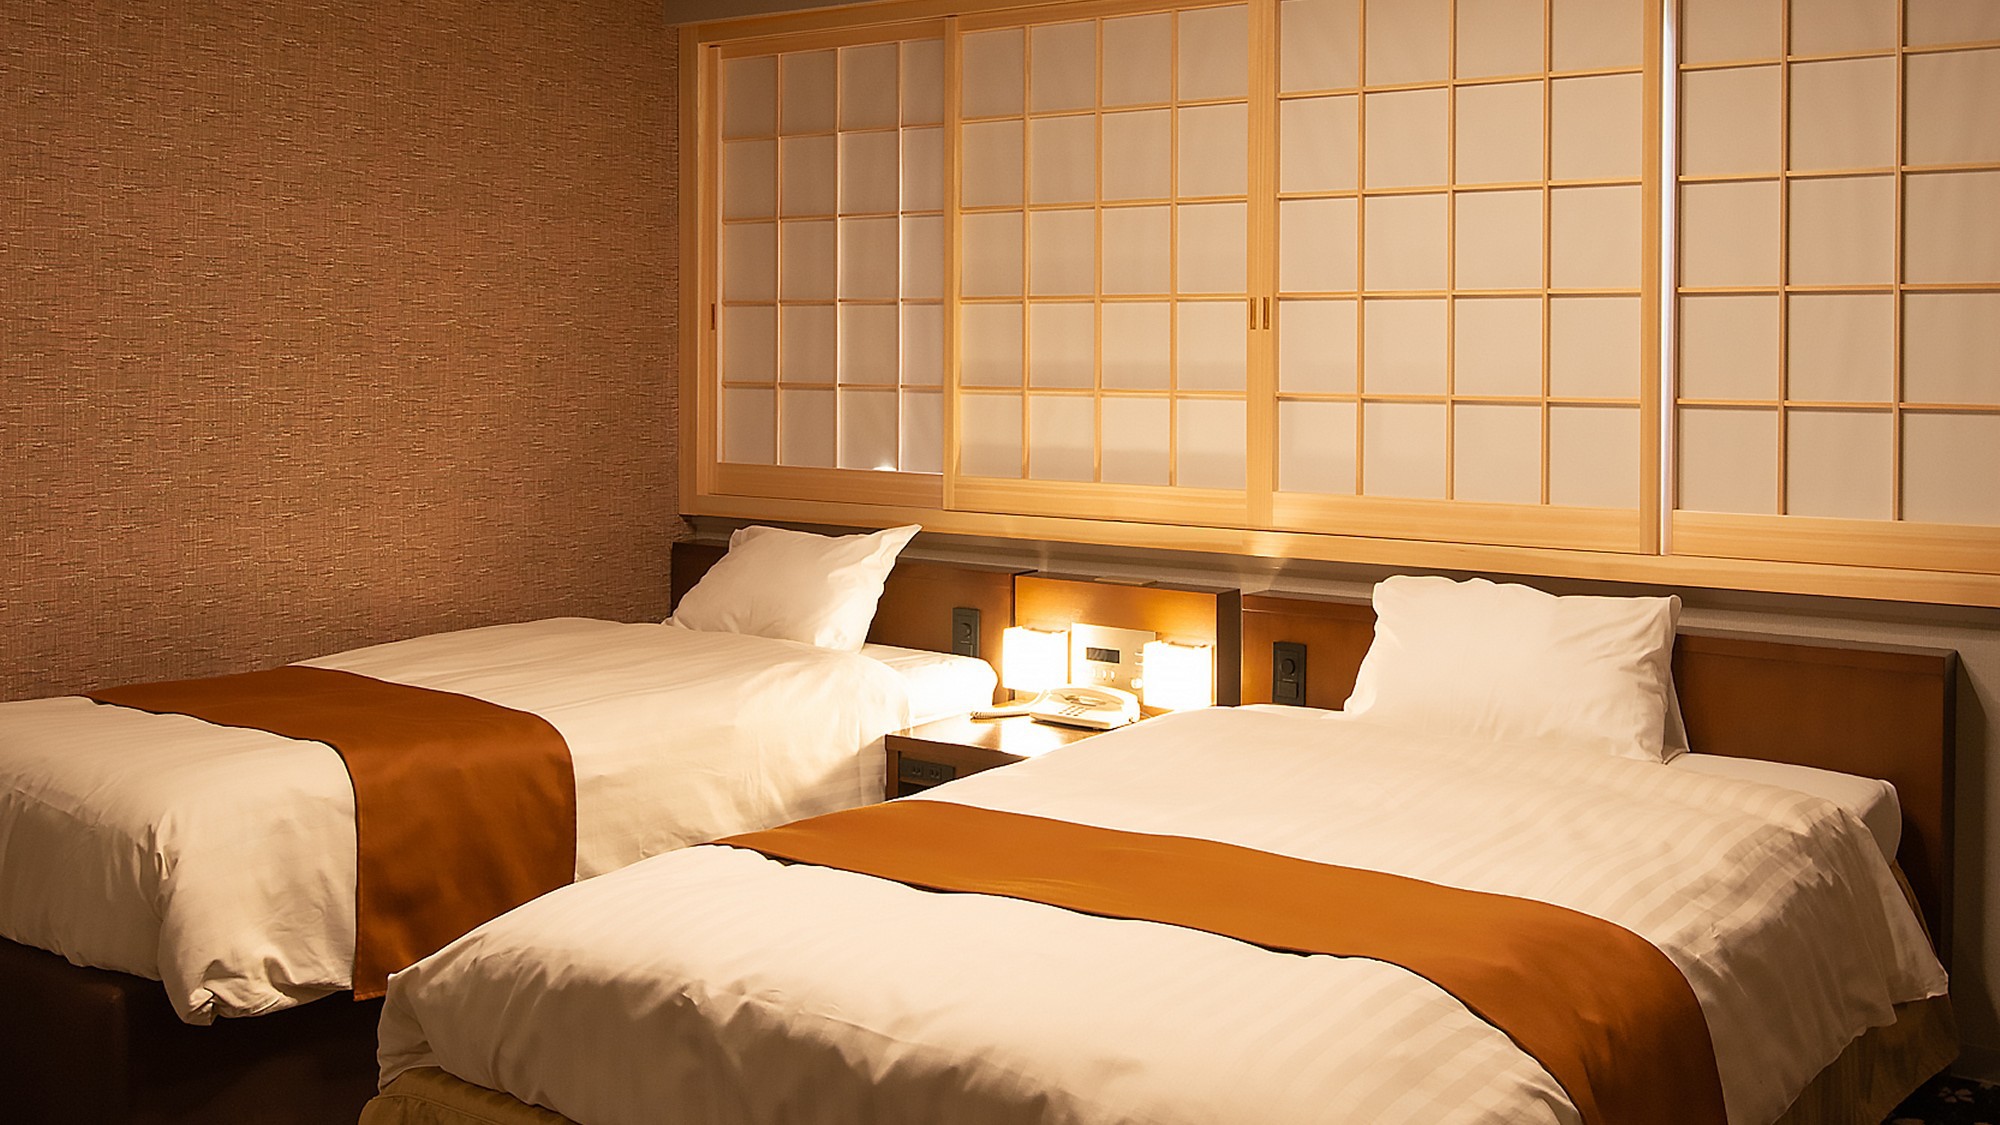 全ての客室に、上質な眠りにこだわったマルハチプロのオリジナルベッドを採用している。